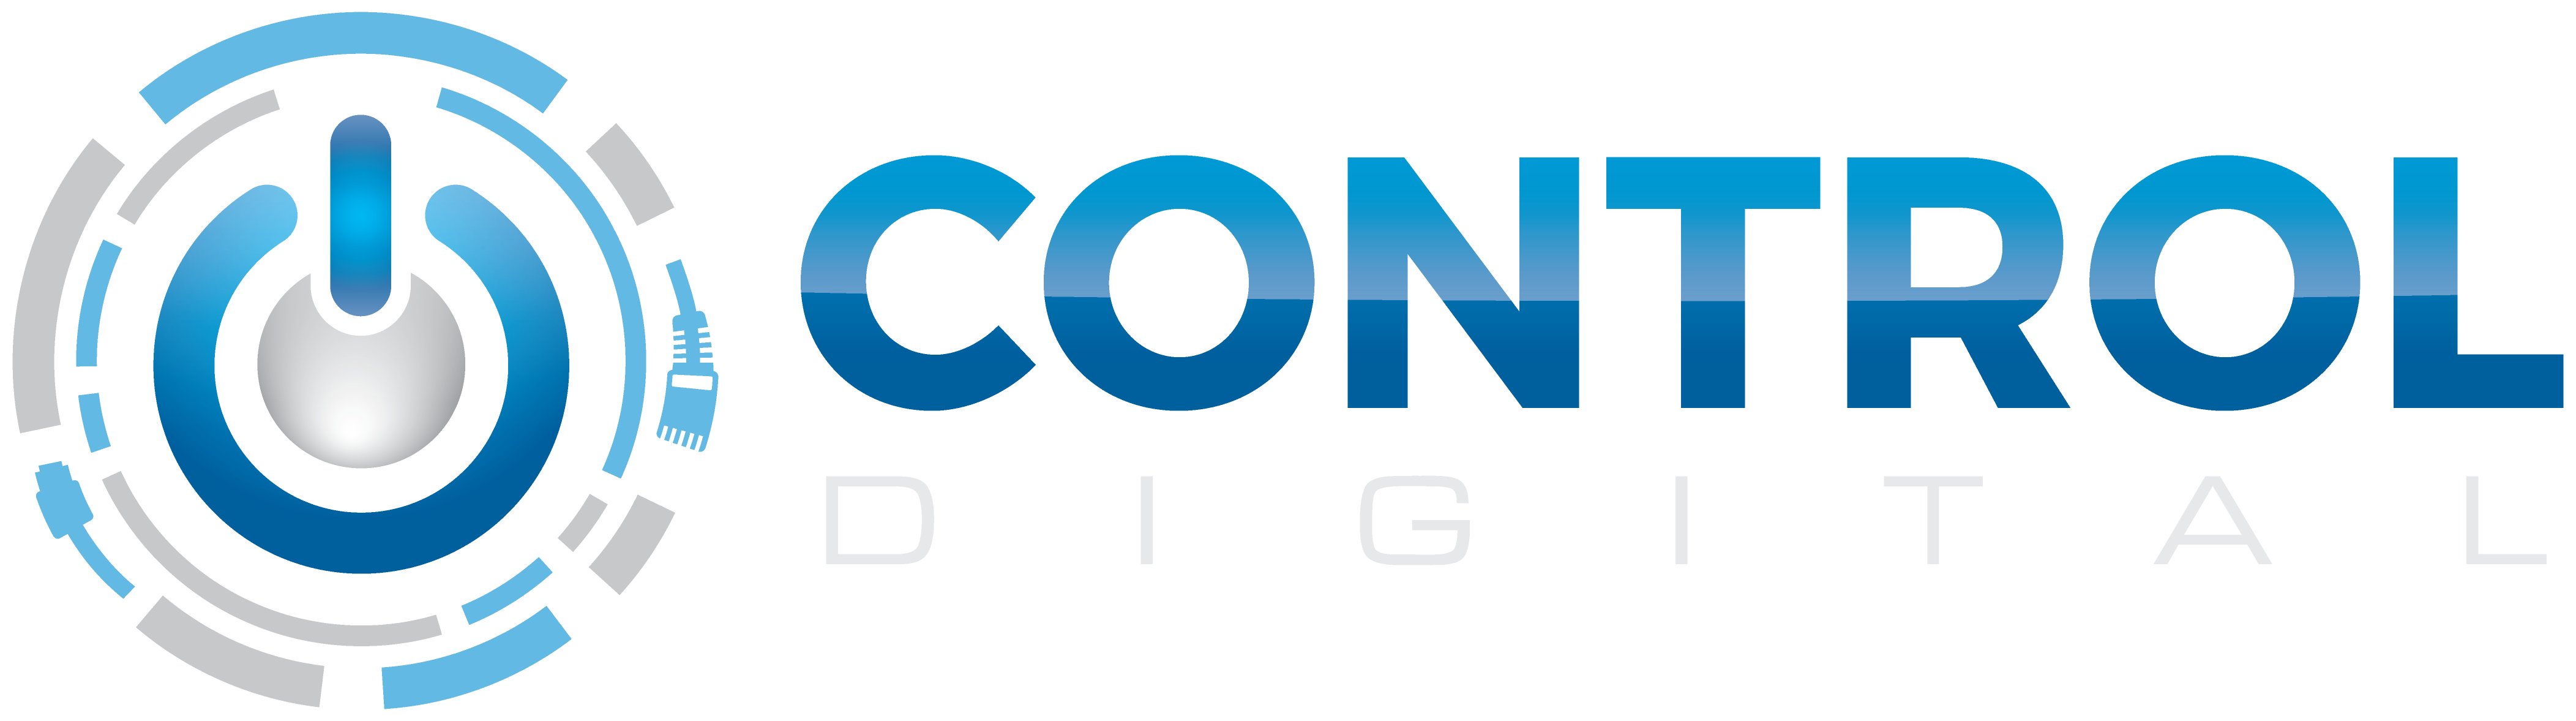 Control-Digital-Logo-Transparent-BG-for-Black-or-Blue-BG